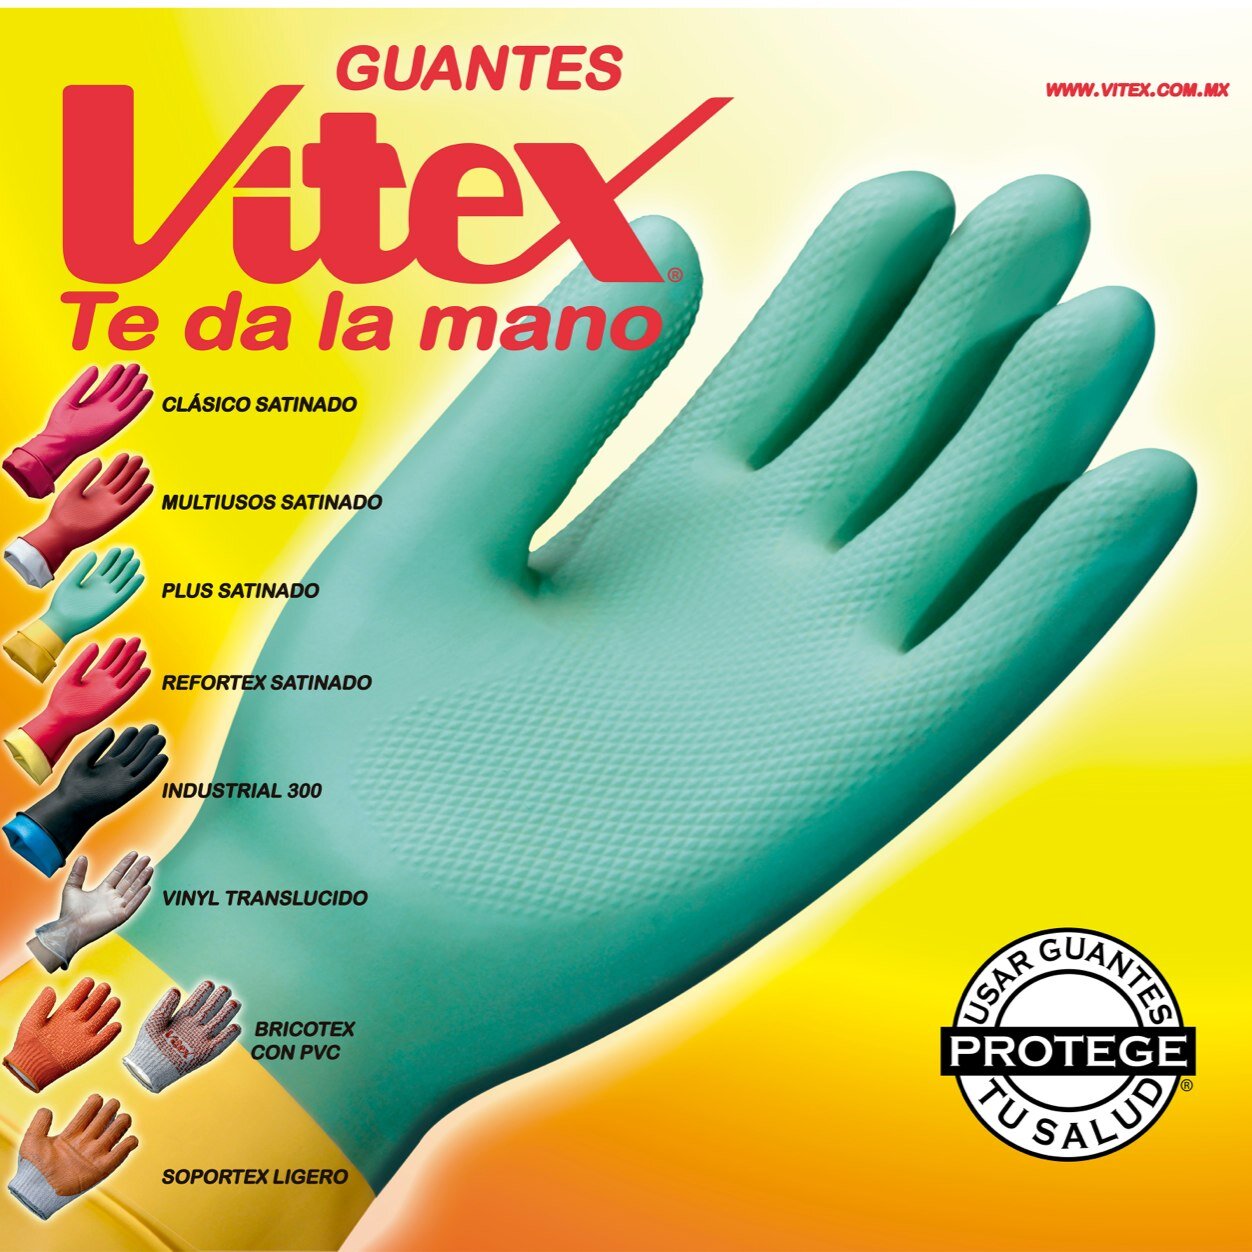 Fabricante de guantes de látex y otros materiales para proteccion y seguridad.